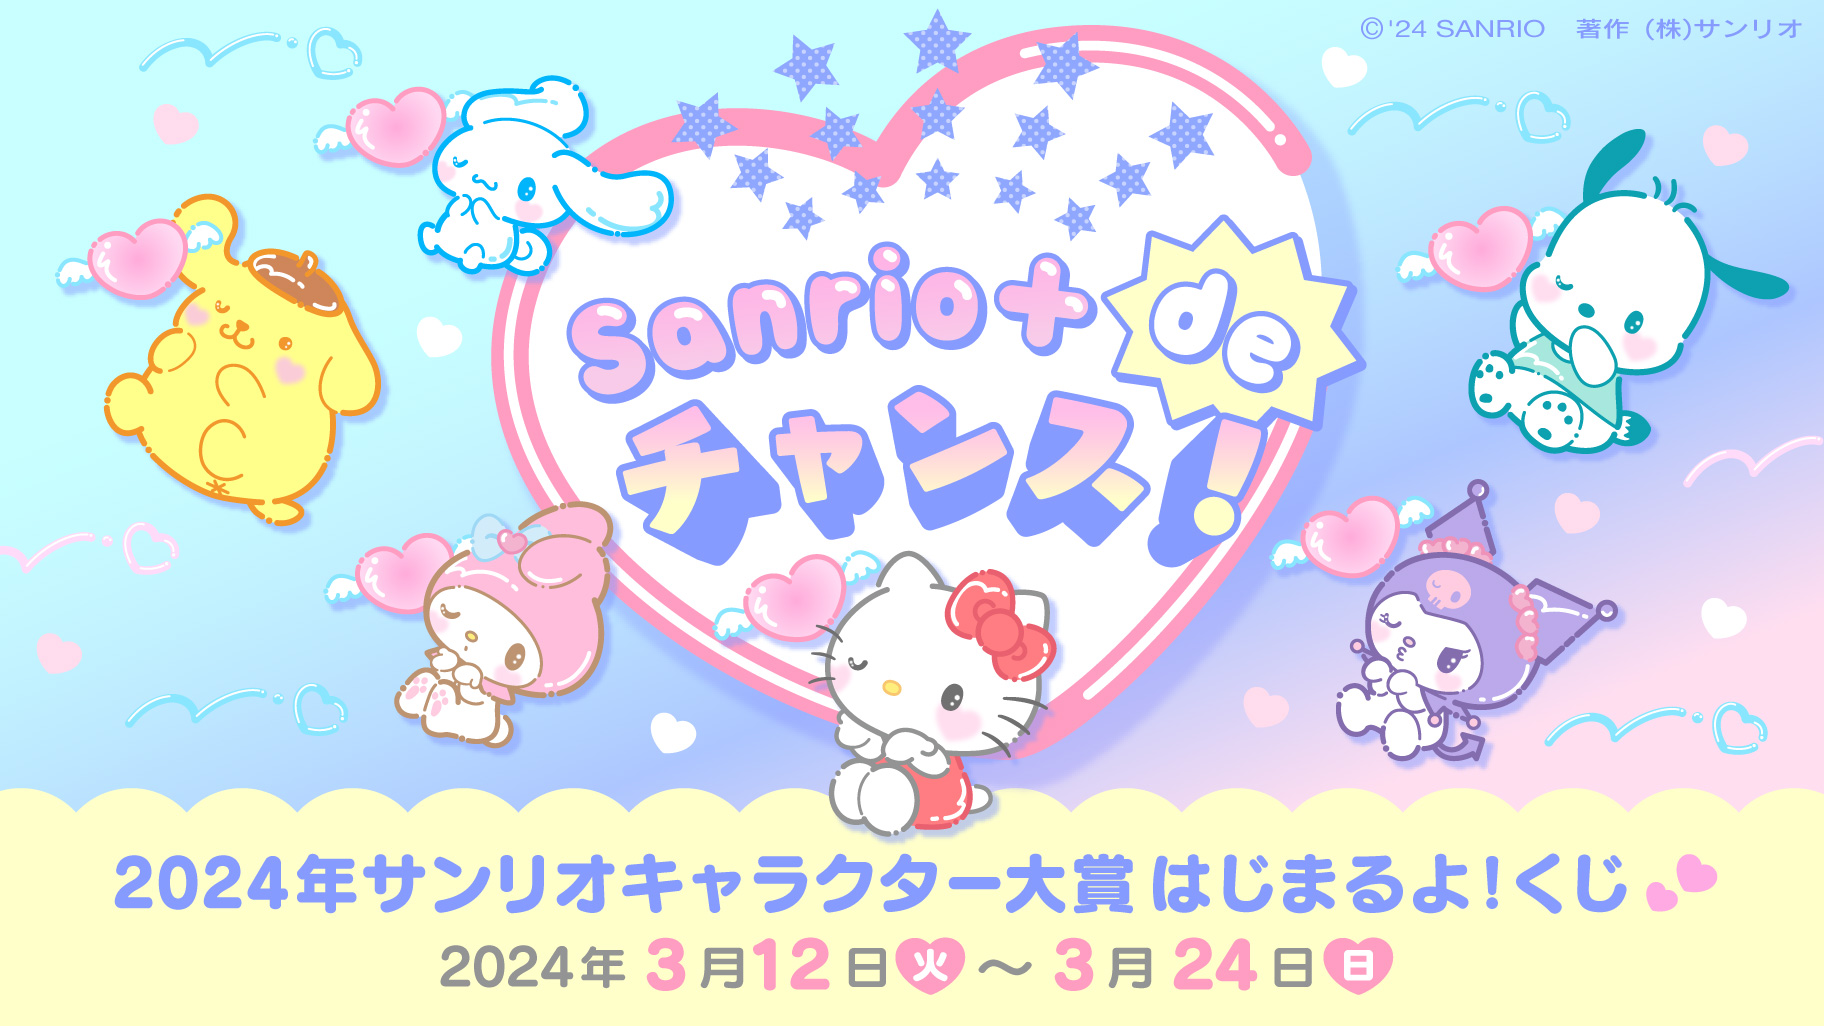 「2024年サンリオキャラクター大賞」Sanrio＋ de チャンス！2024年サンリオキャラクター大賞はじまるよ！くじ